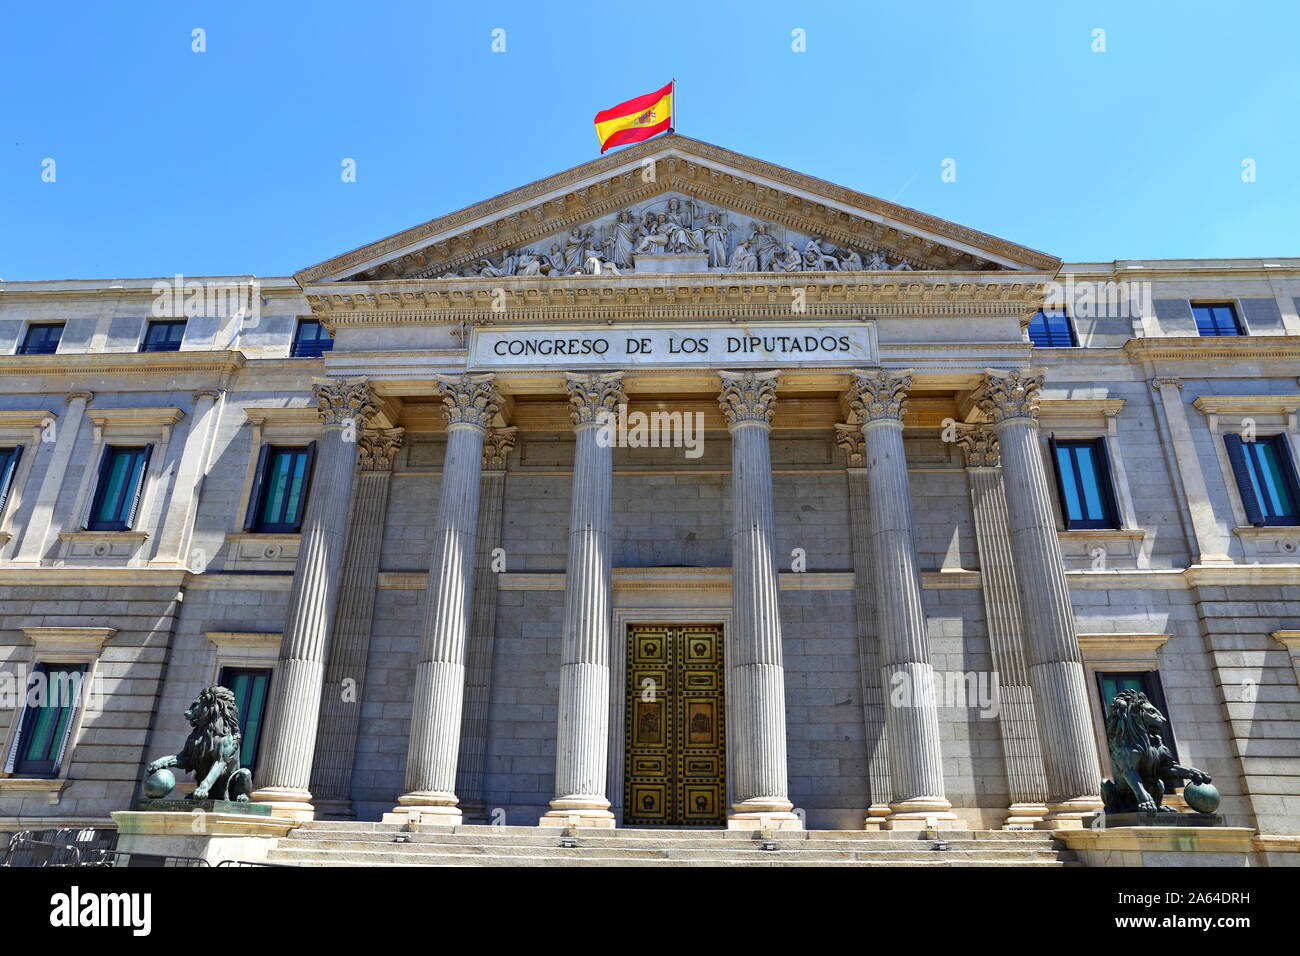 Vista frontal del Palacio de las Cortes o Congreso de los Diputados  (Congreso de Diputados) Edificio en Madrid, España Fotografía de stock -  Alamy